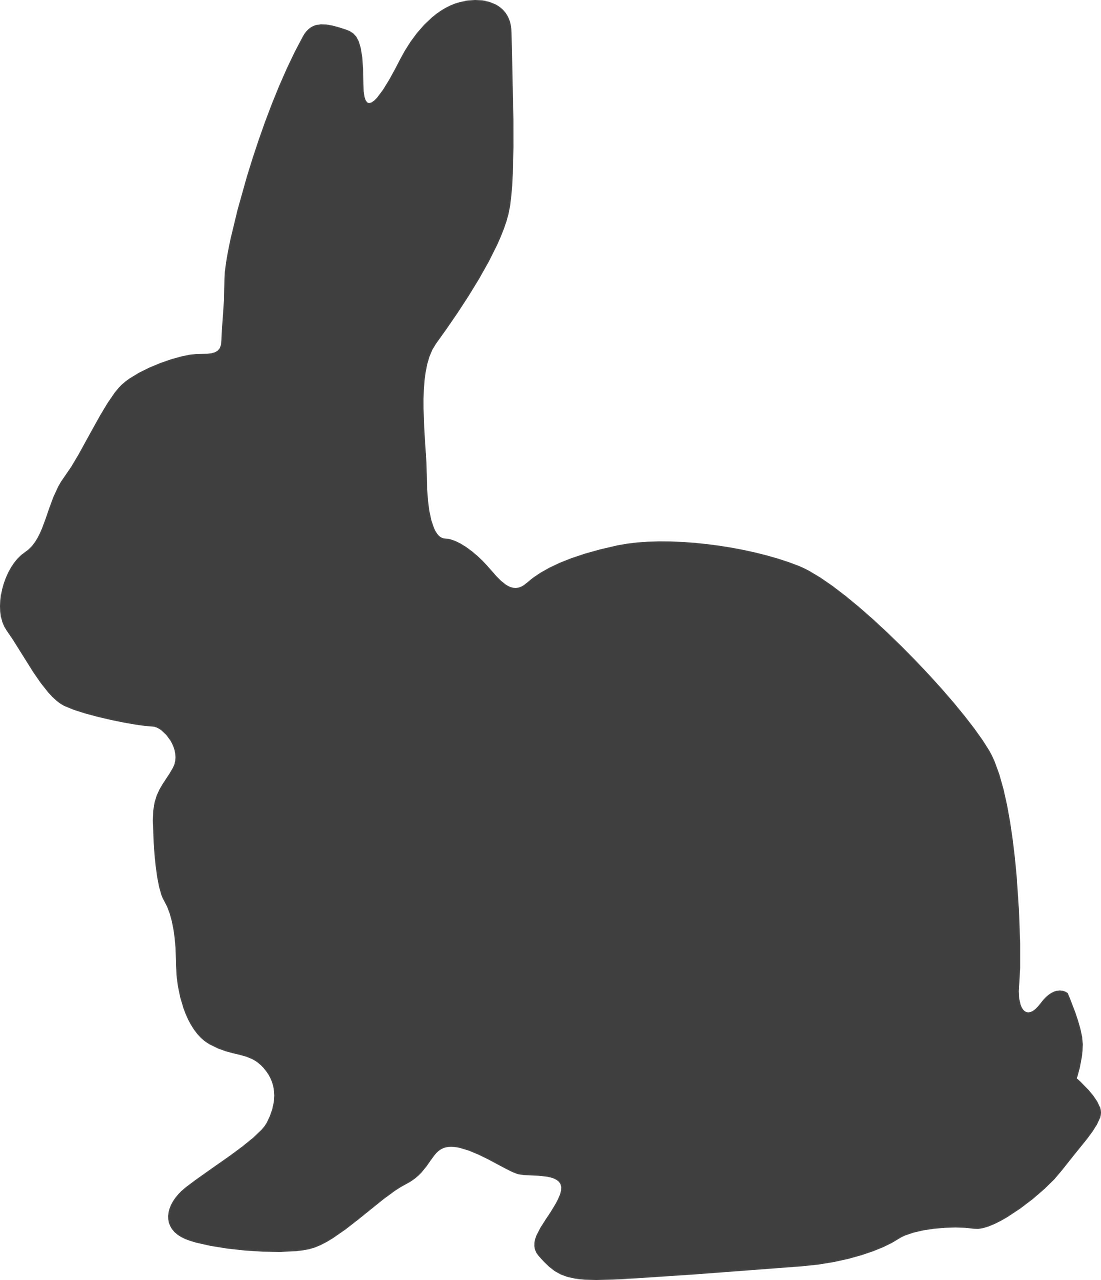 rabbit hare bunny free photo